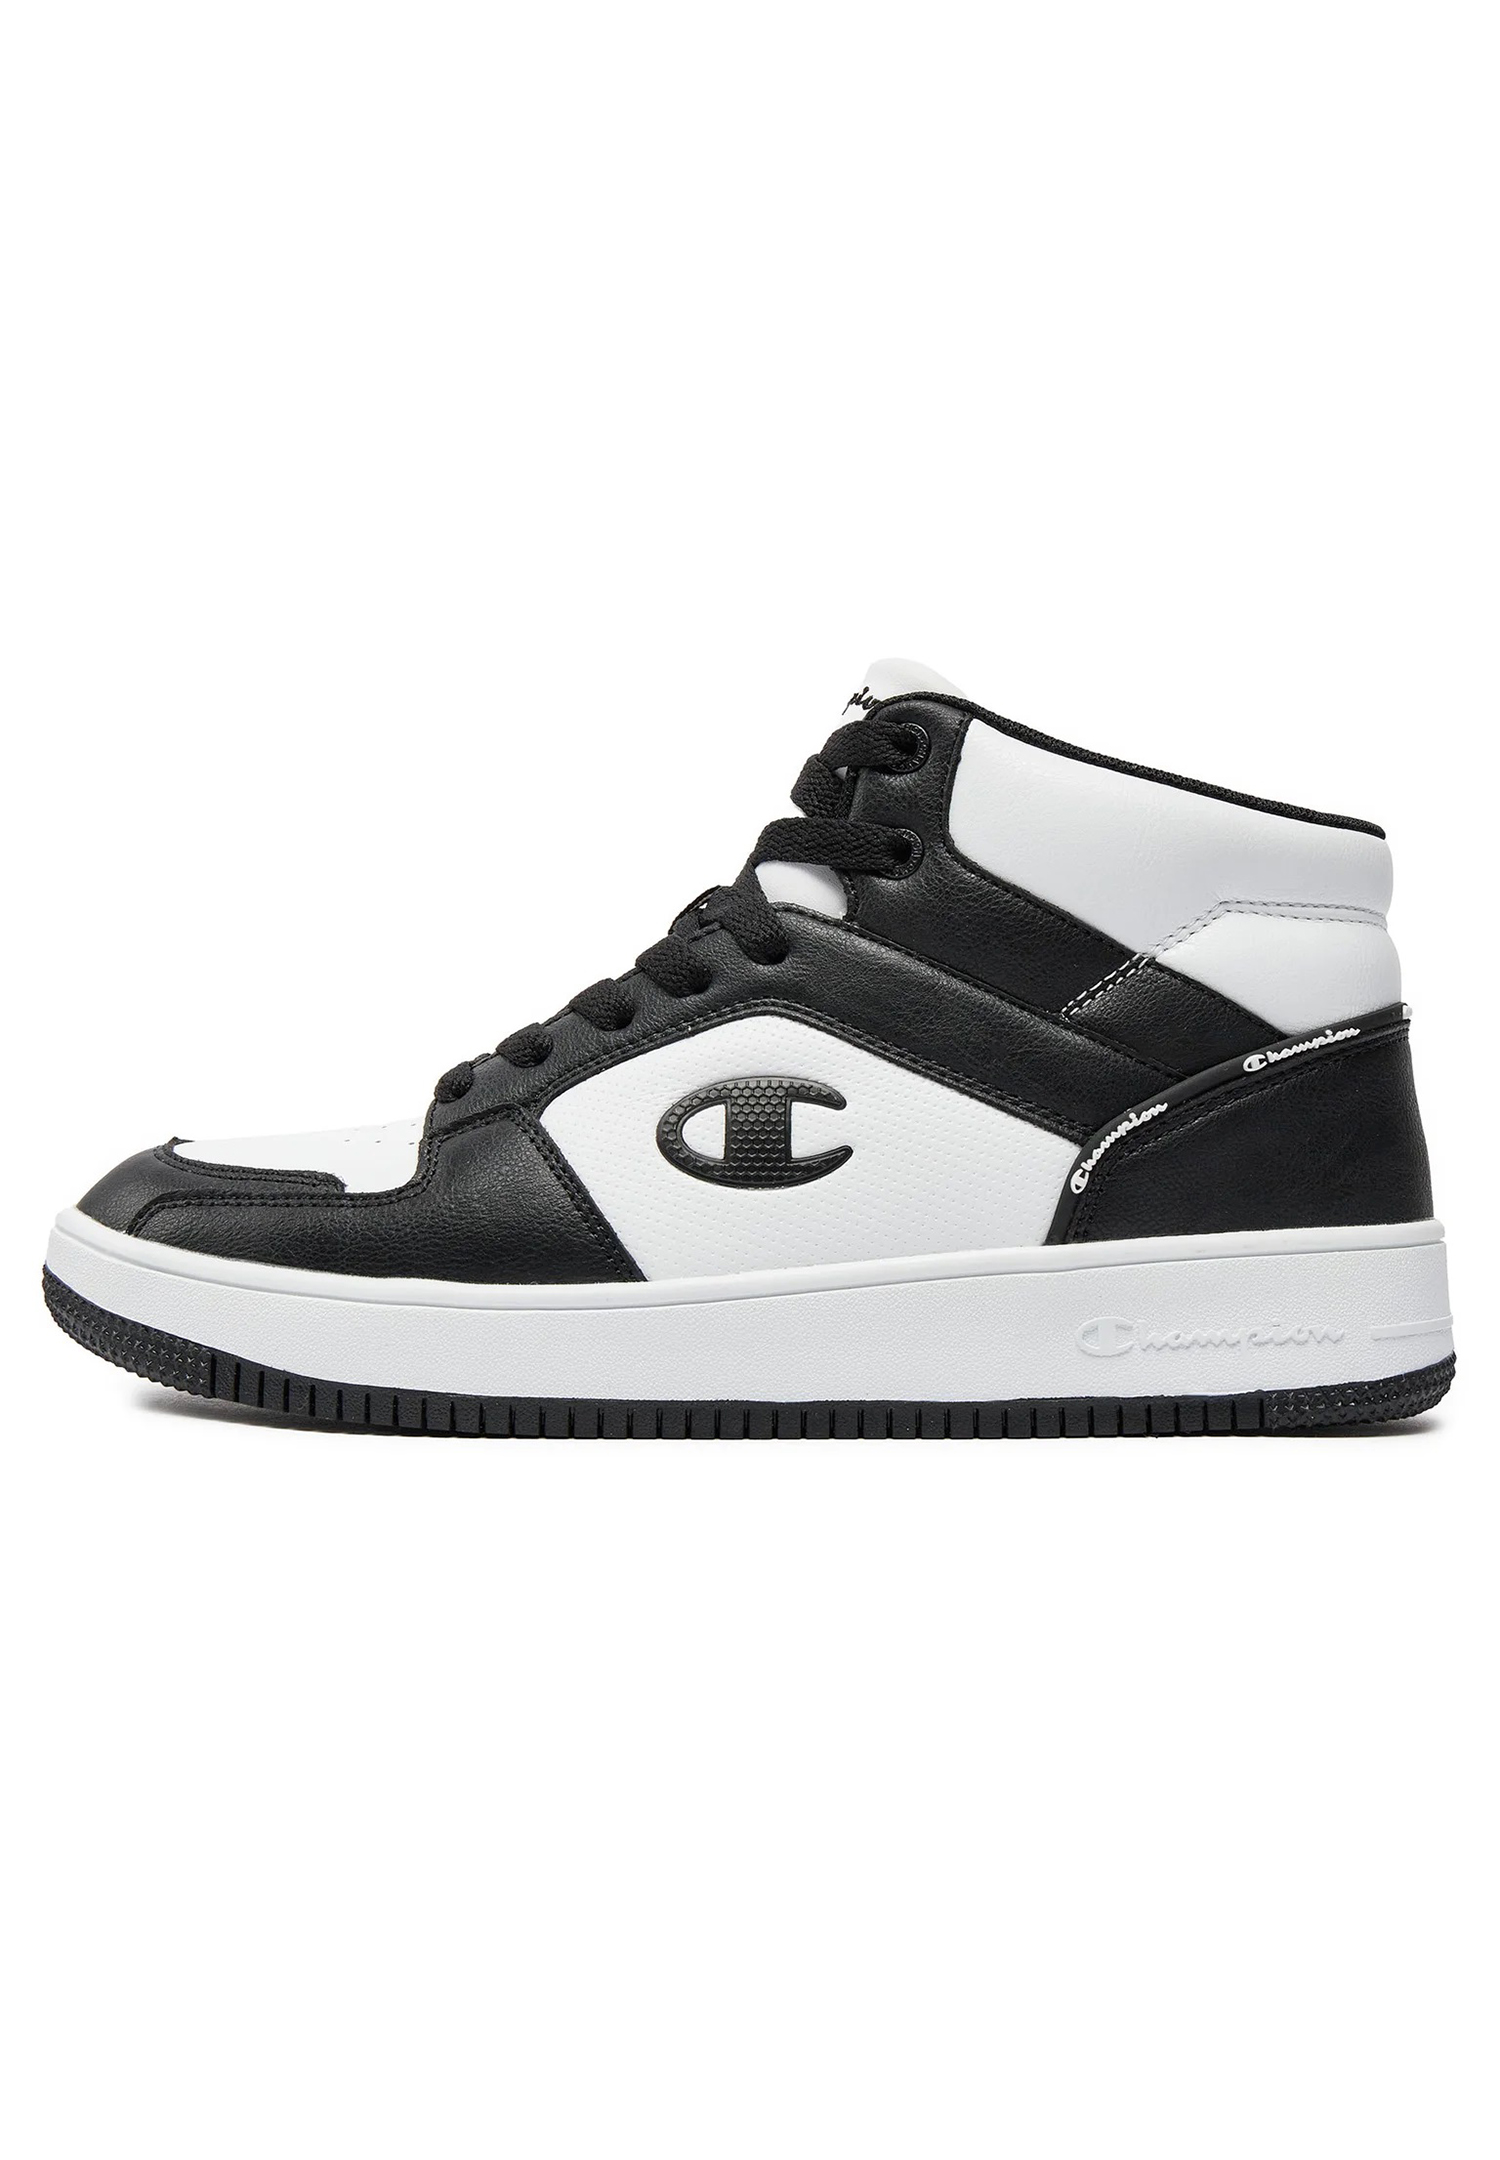 Champion REBOUND 2.0 MID Herren Sneaker S21907-CHA-WW019  weiß/schwarz 